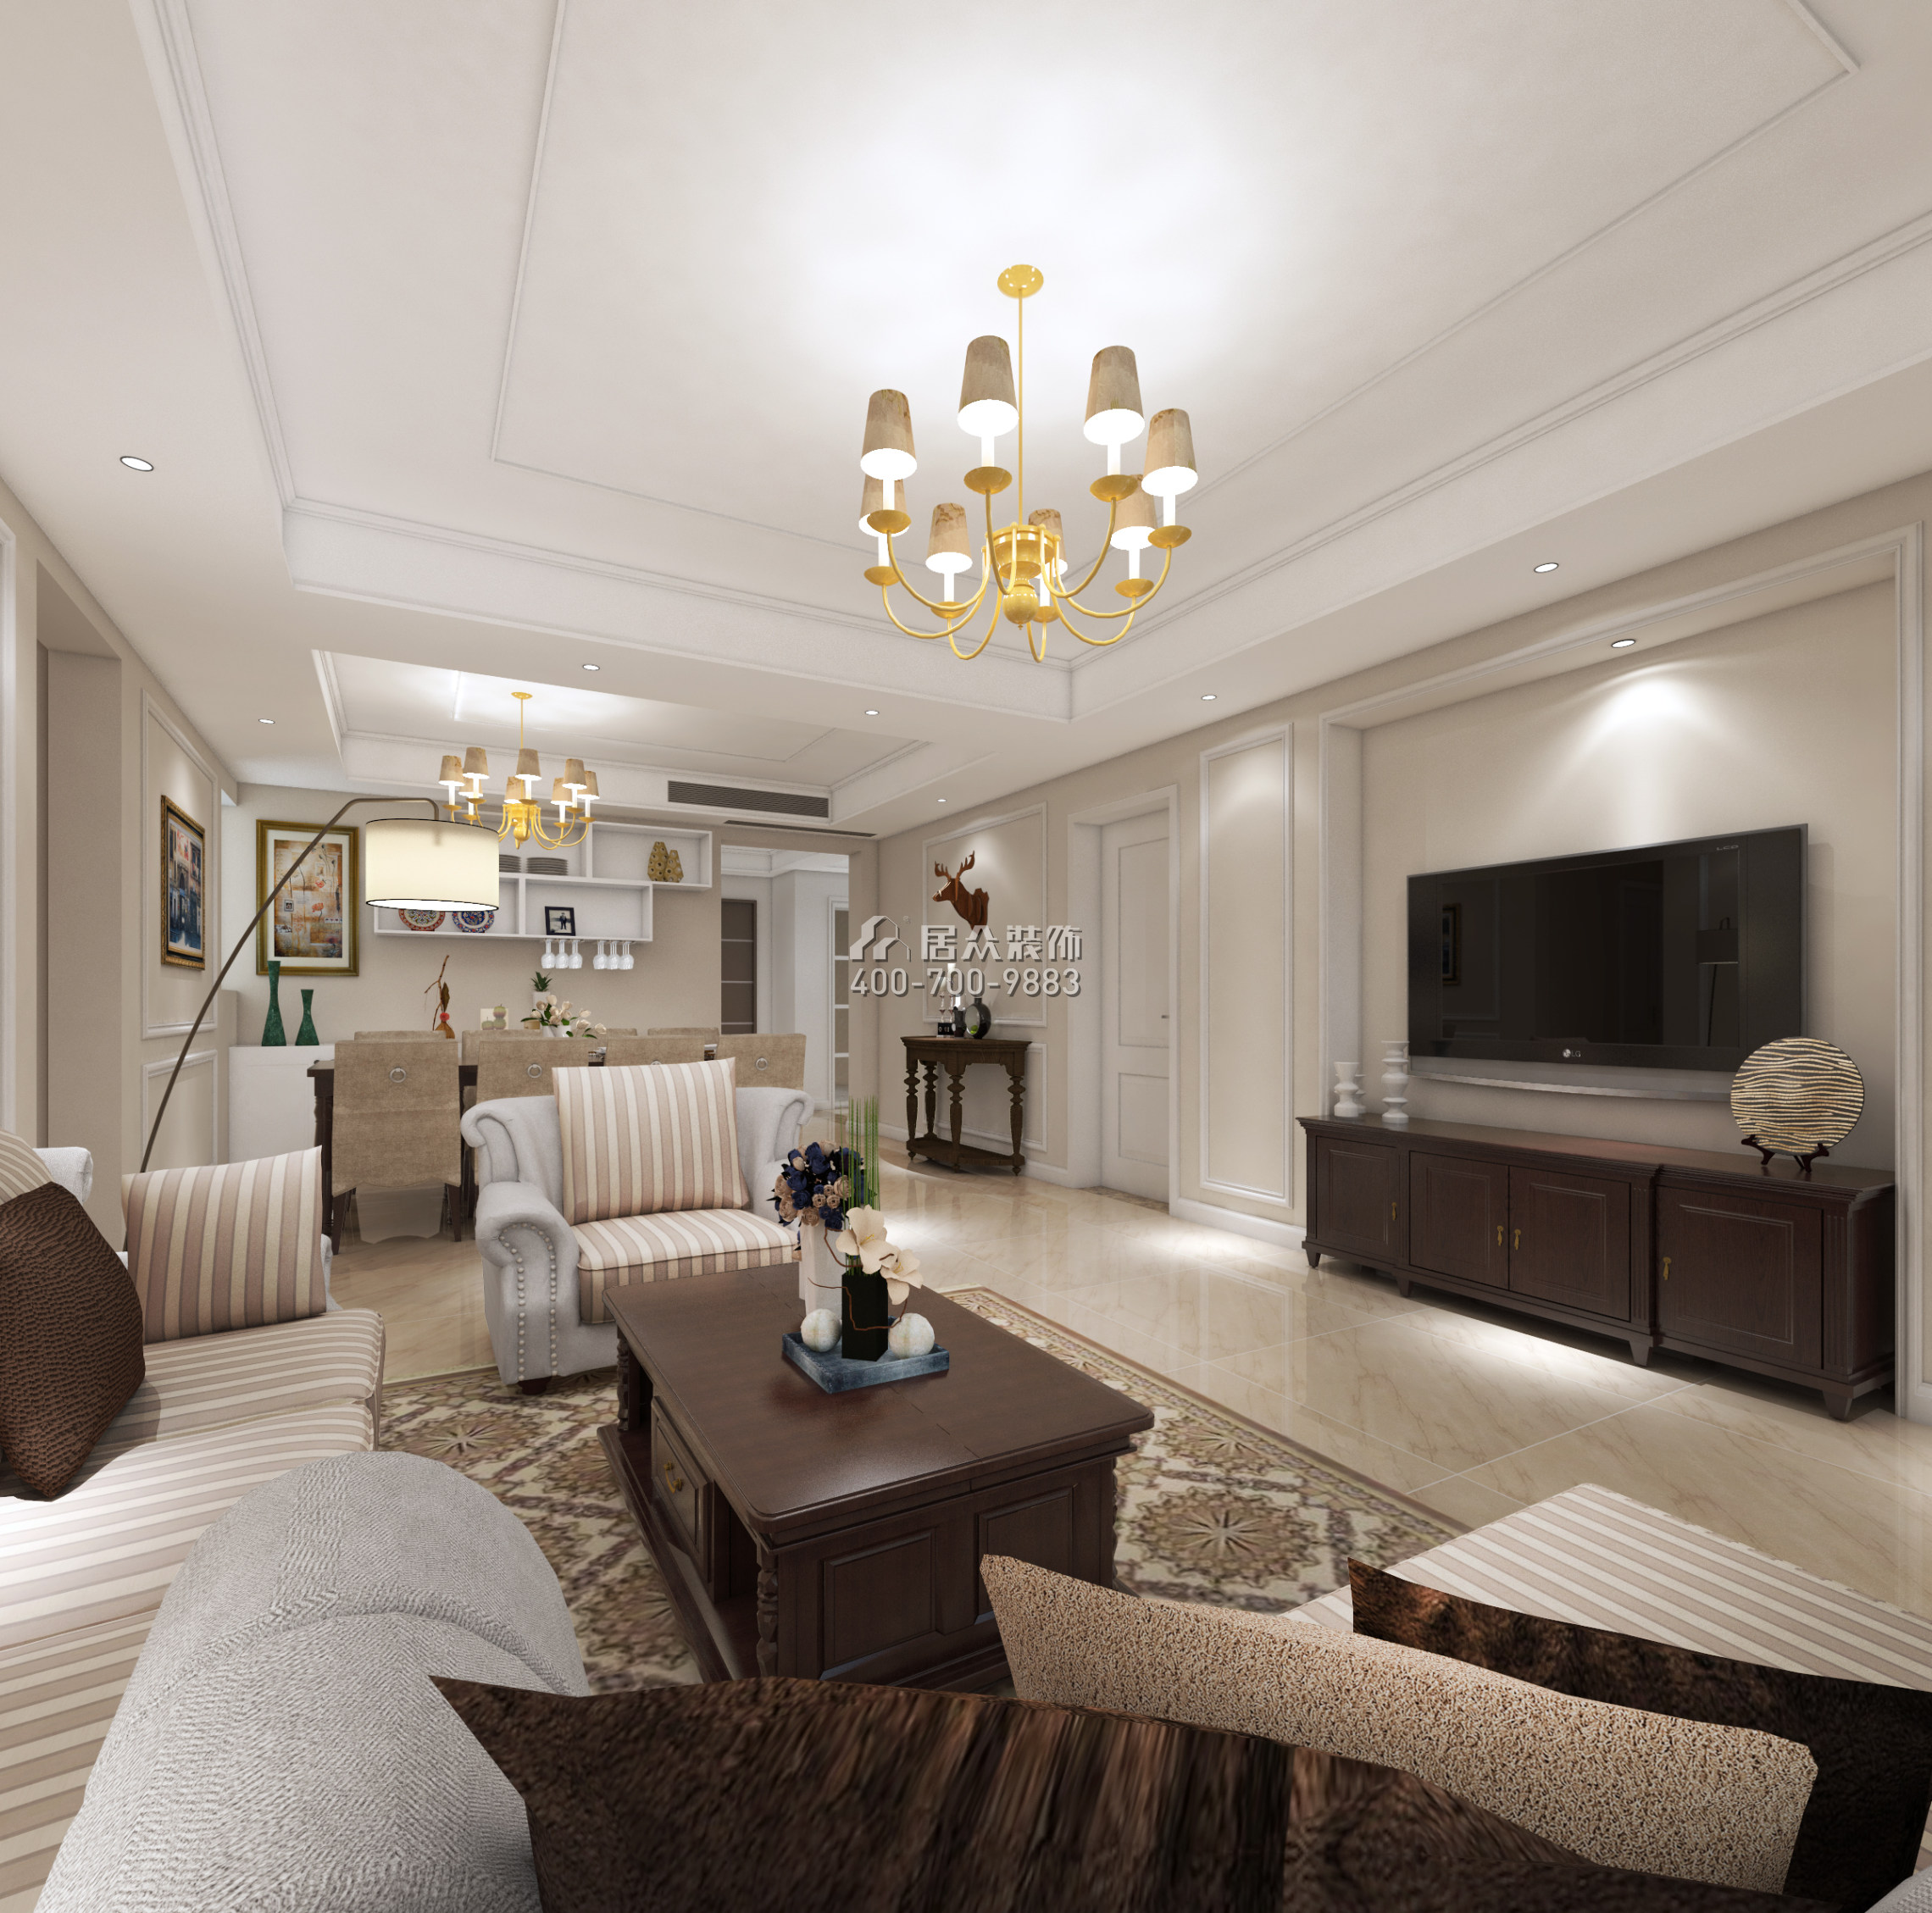 黃埔雅苑一期143平方米美式風格平層戶型客廳裝修效果圖